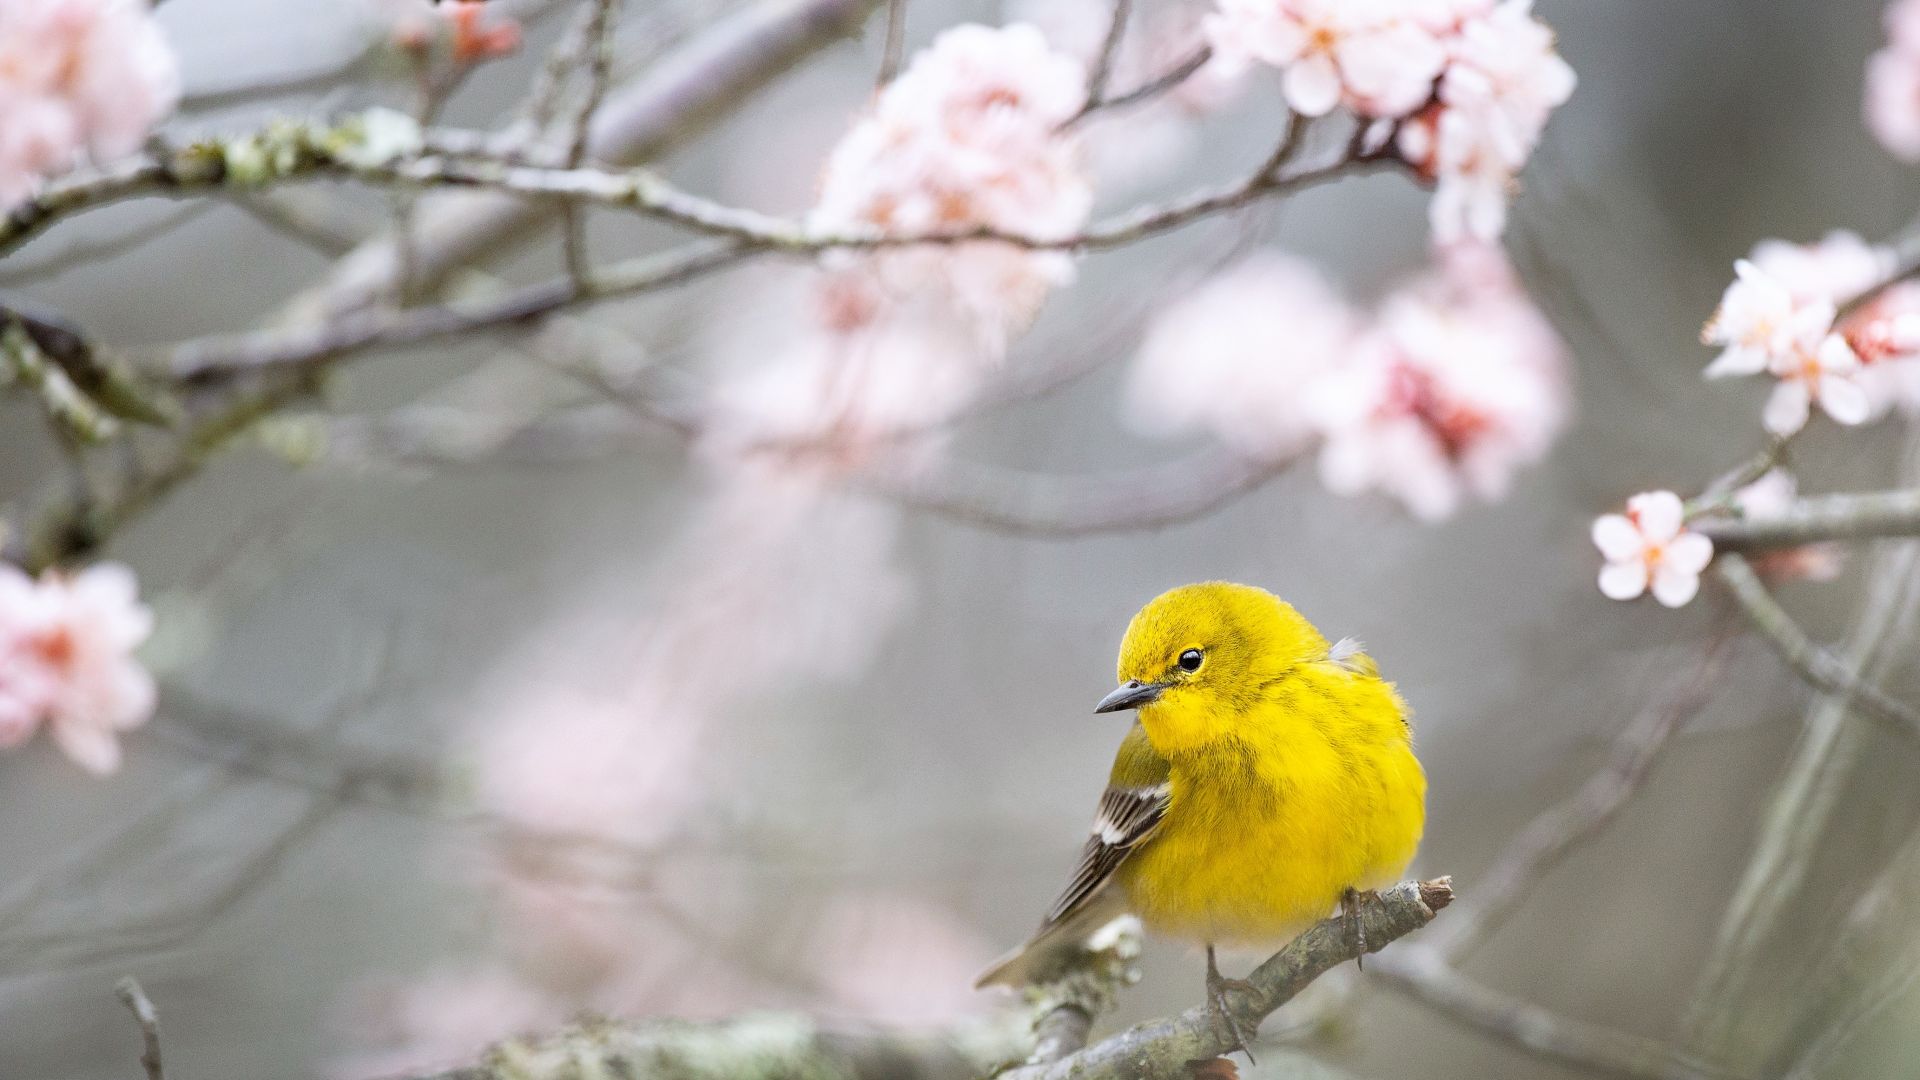 Pine Warbler, bird, yellow, 4K (horizontal)